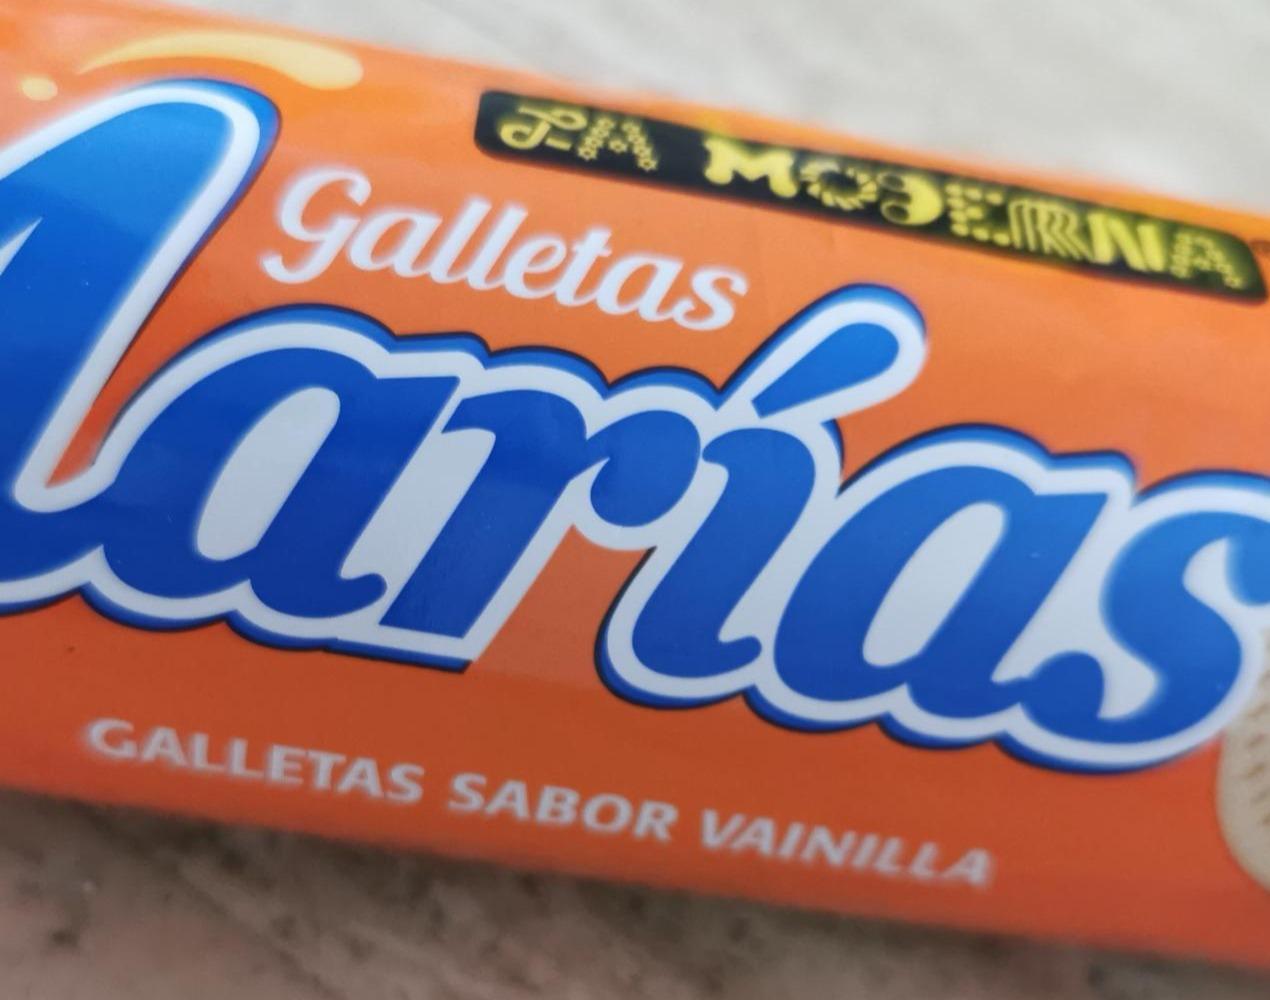 Fotografie - Marías galletas sabor vainilla